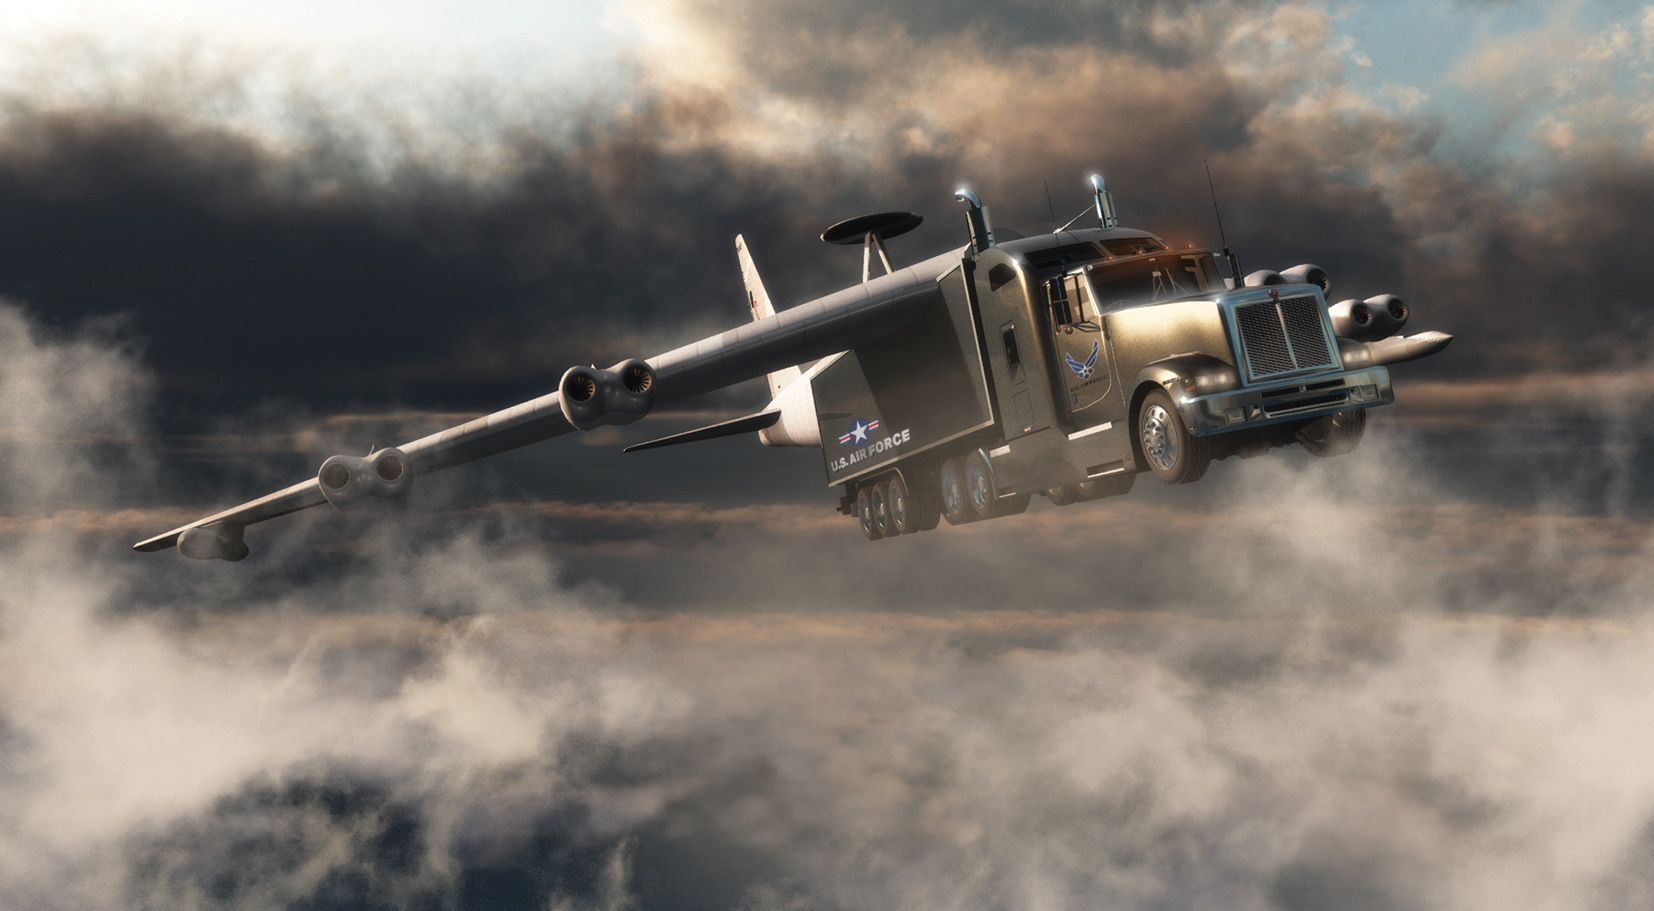 Flying Truck